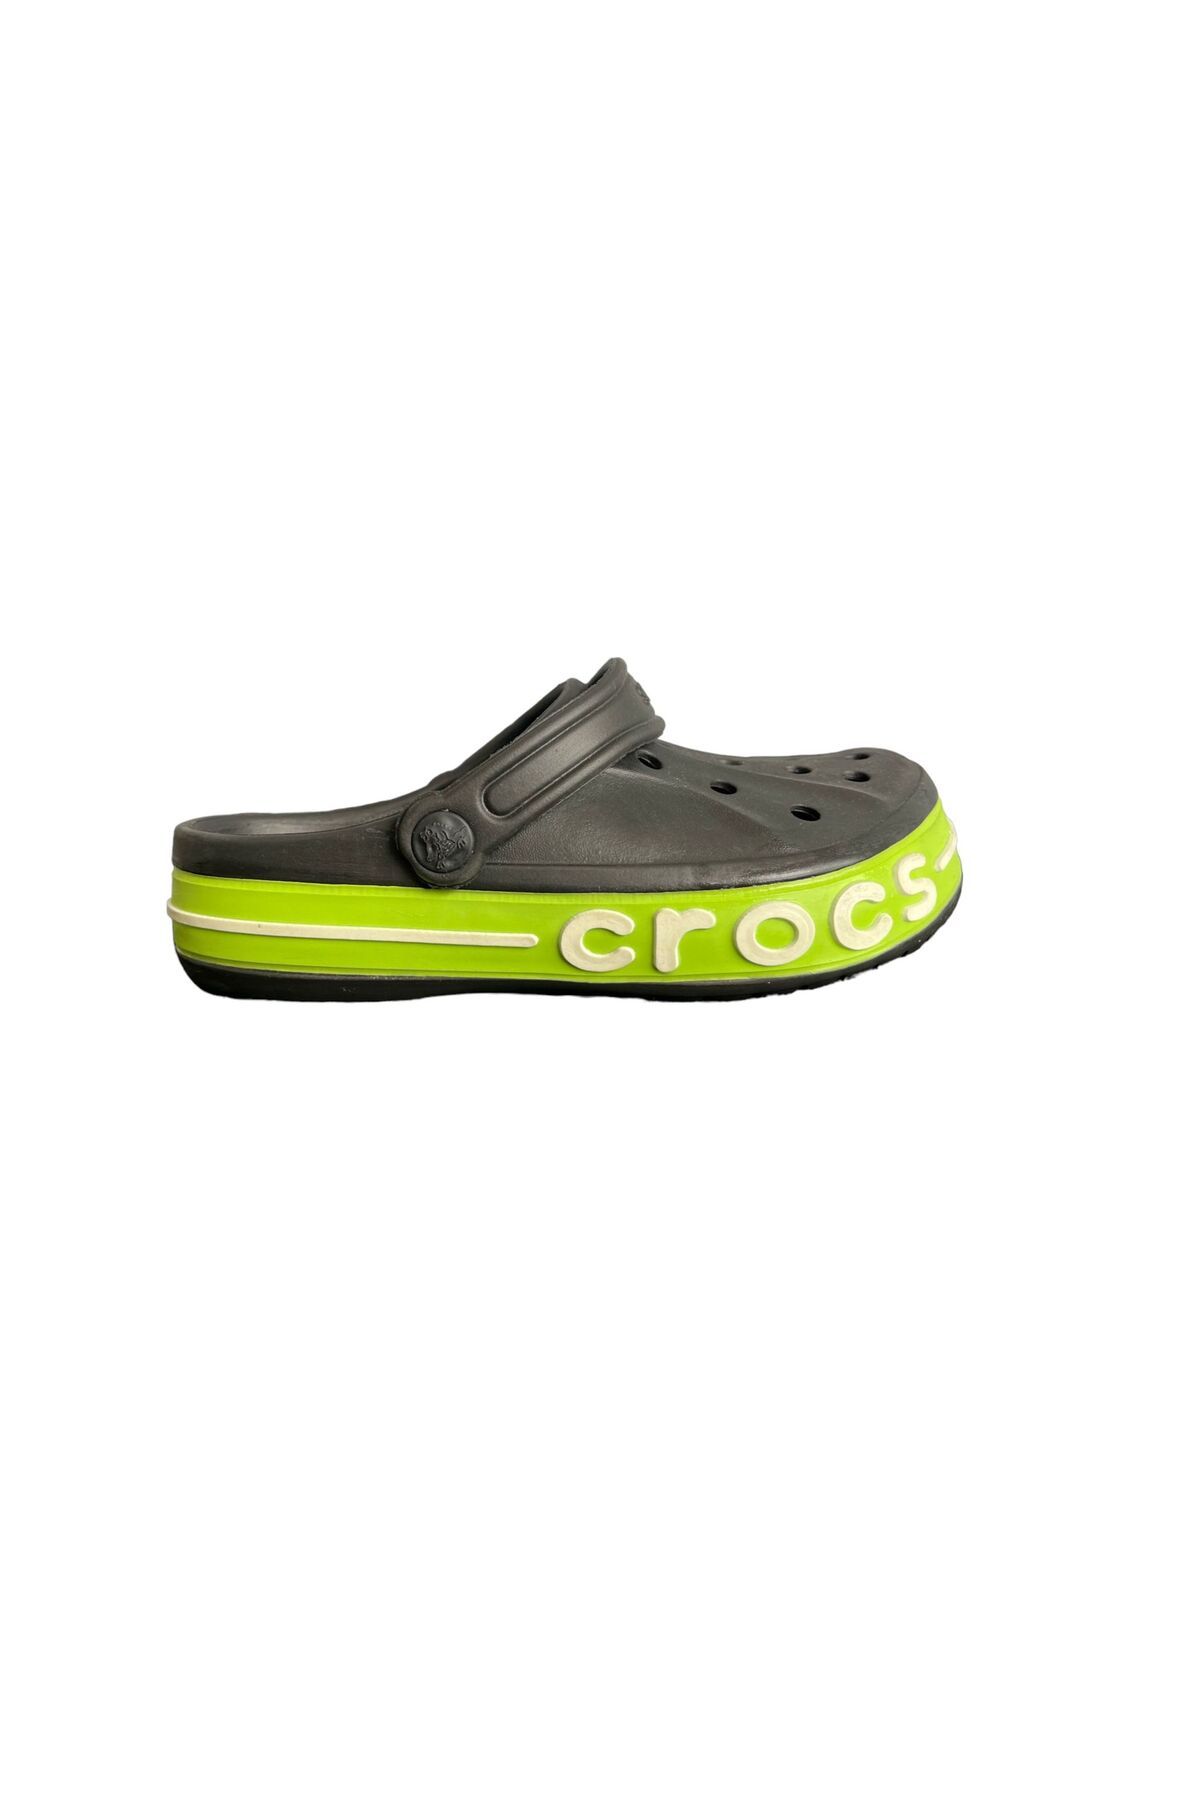 Crocs Bayaband Siyah/Yeşil